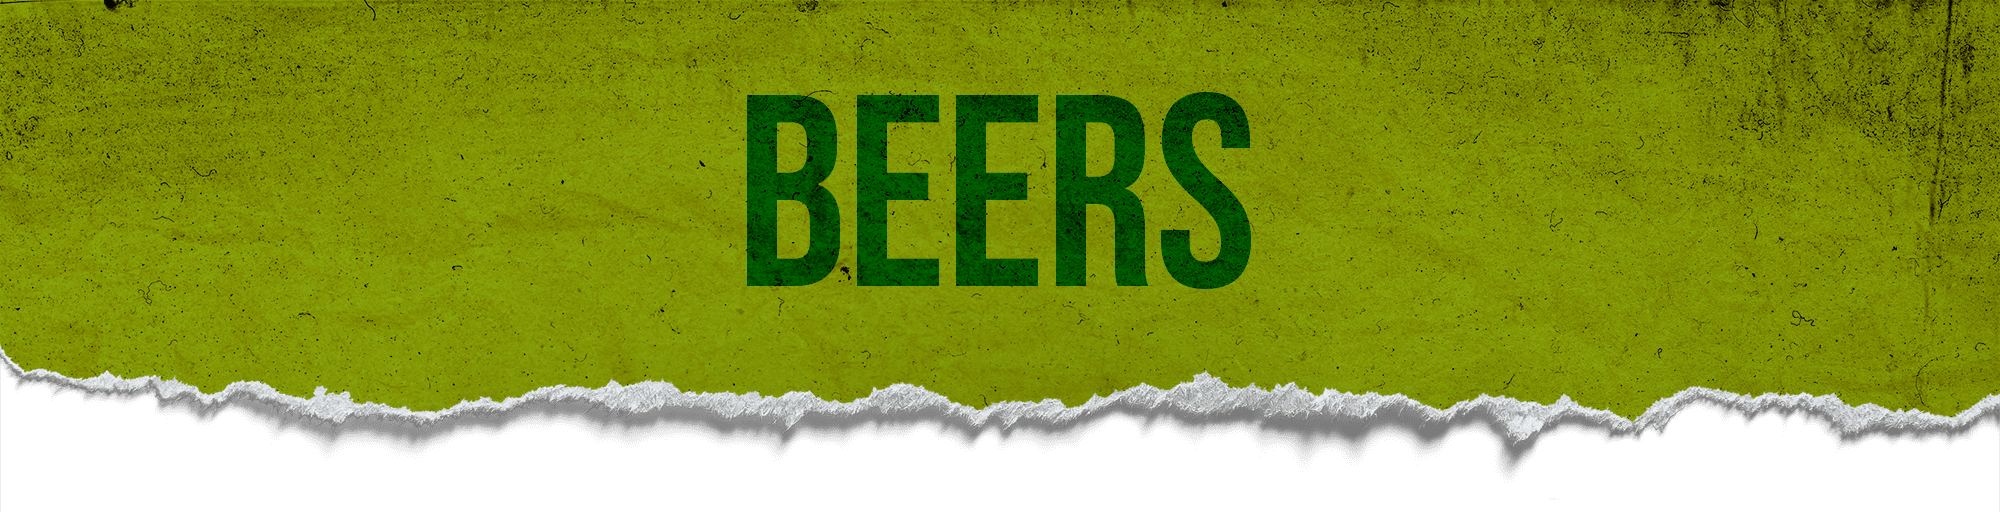 Beers Page Header